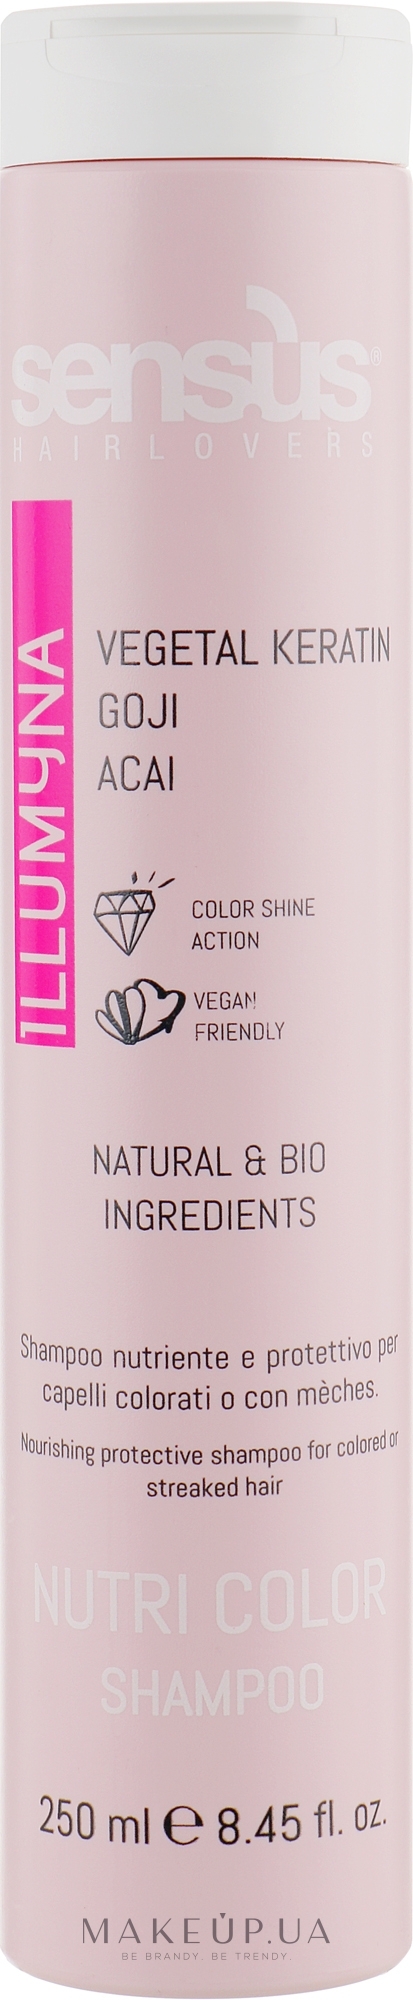 Шампунь для защиты цвета окрашенных и мелированных волос - Sensus Nutri Color Shampoo — фото 250ml